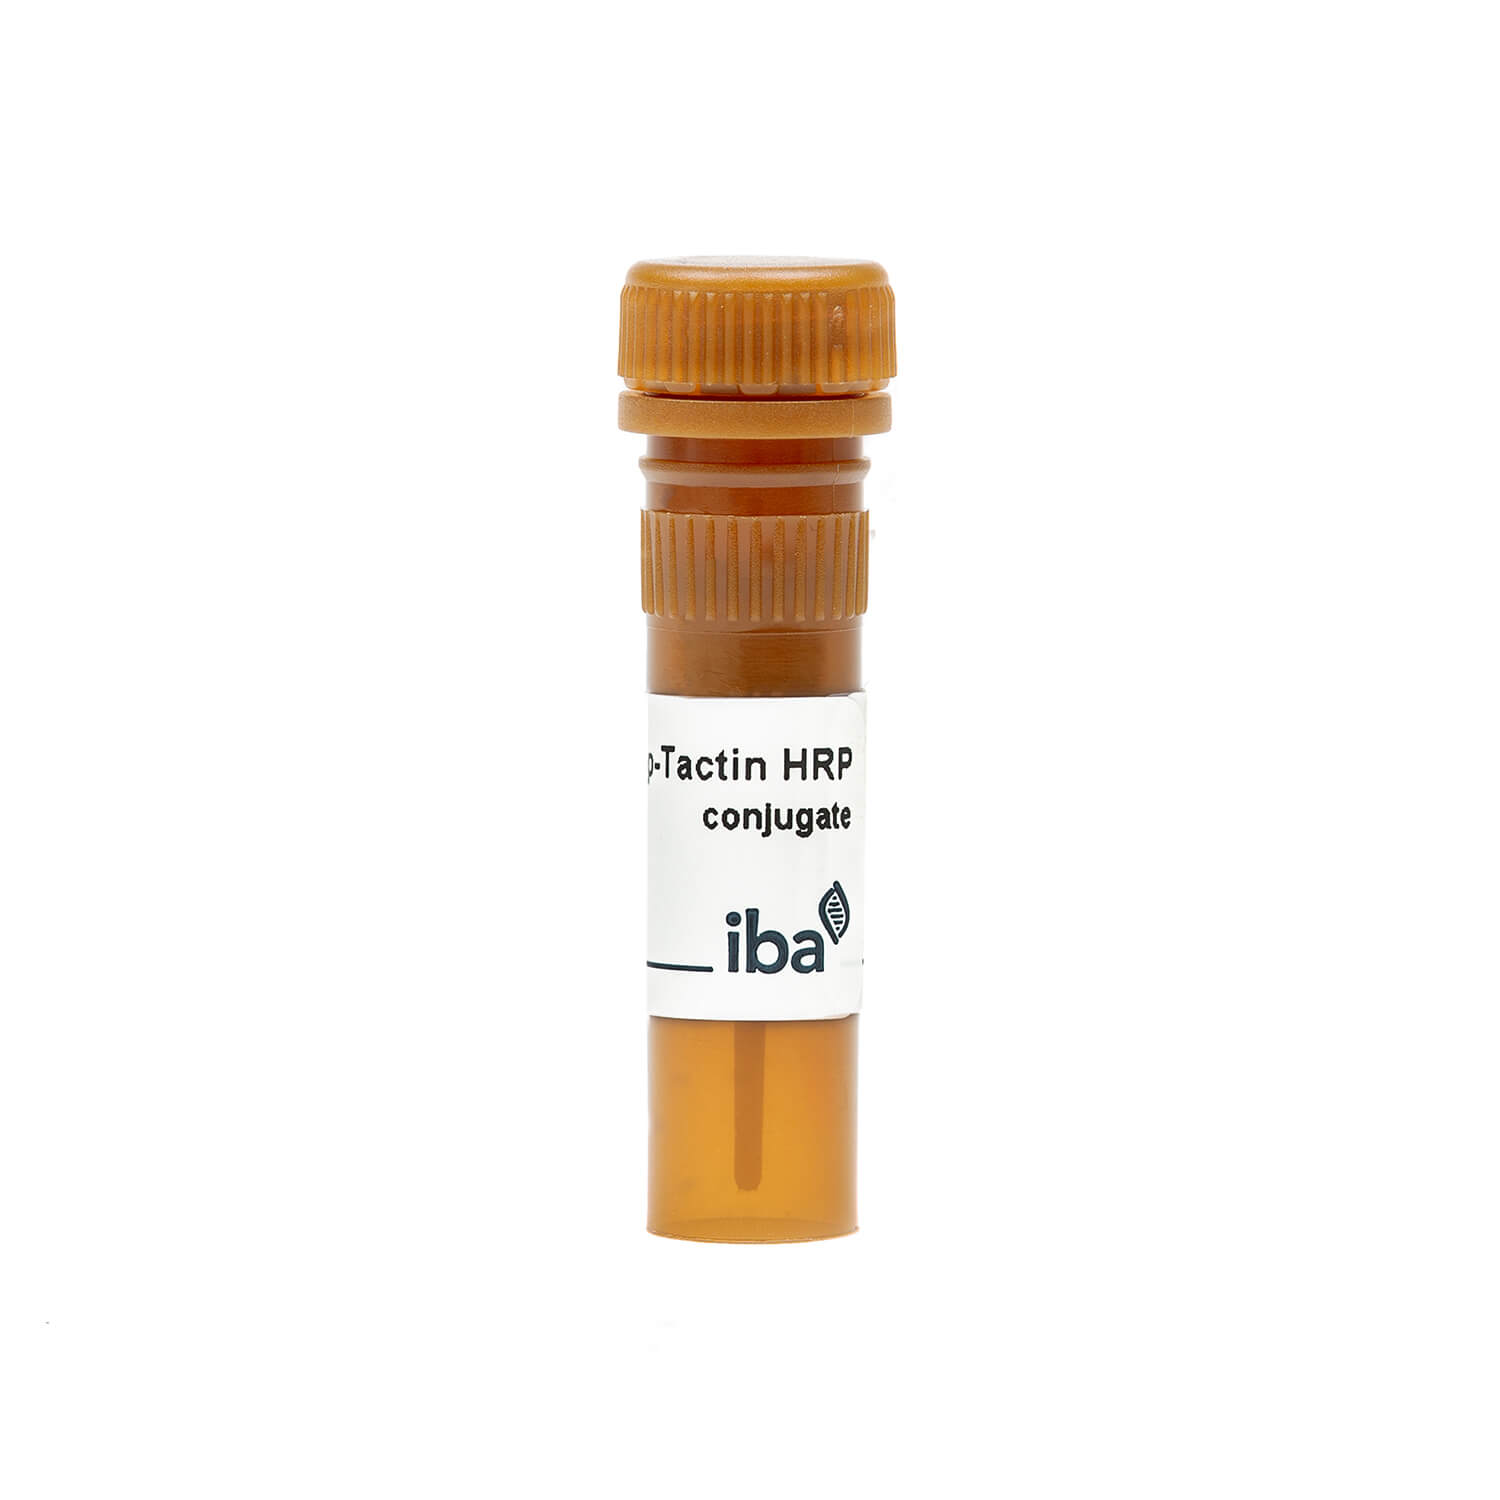 Strep-Tactin® HRP conjugate